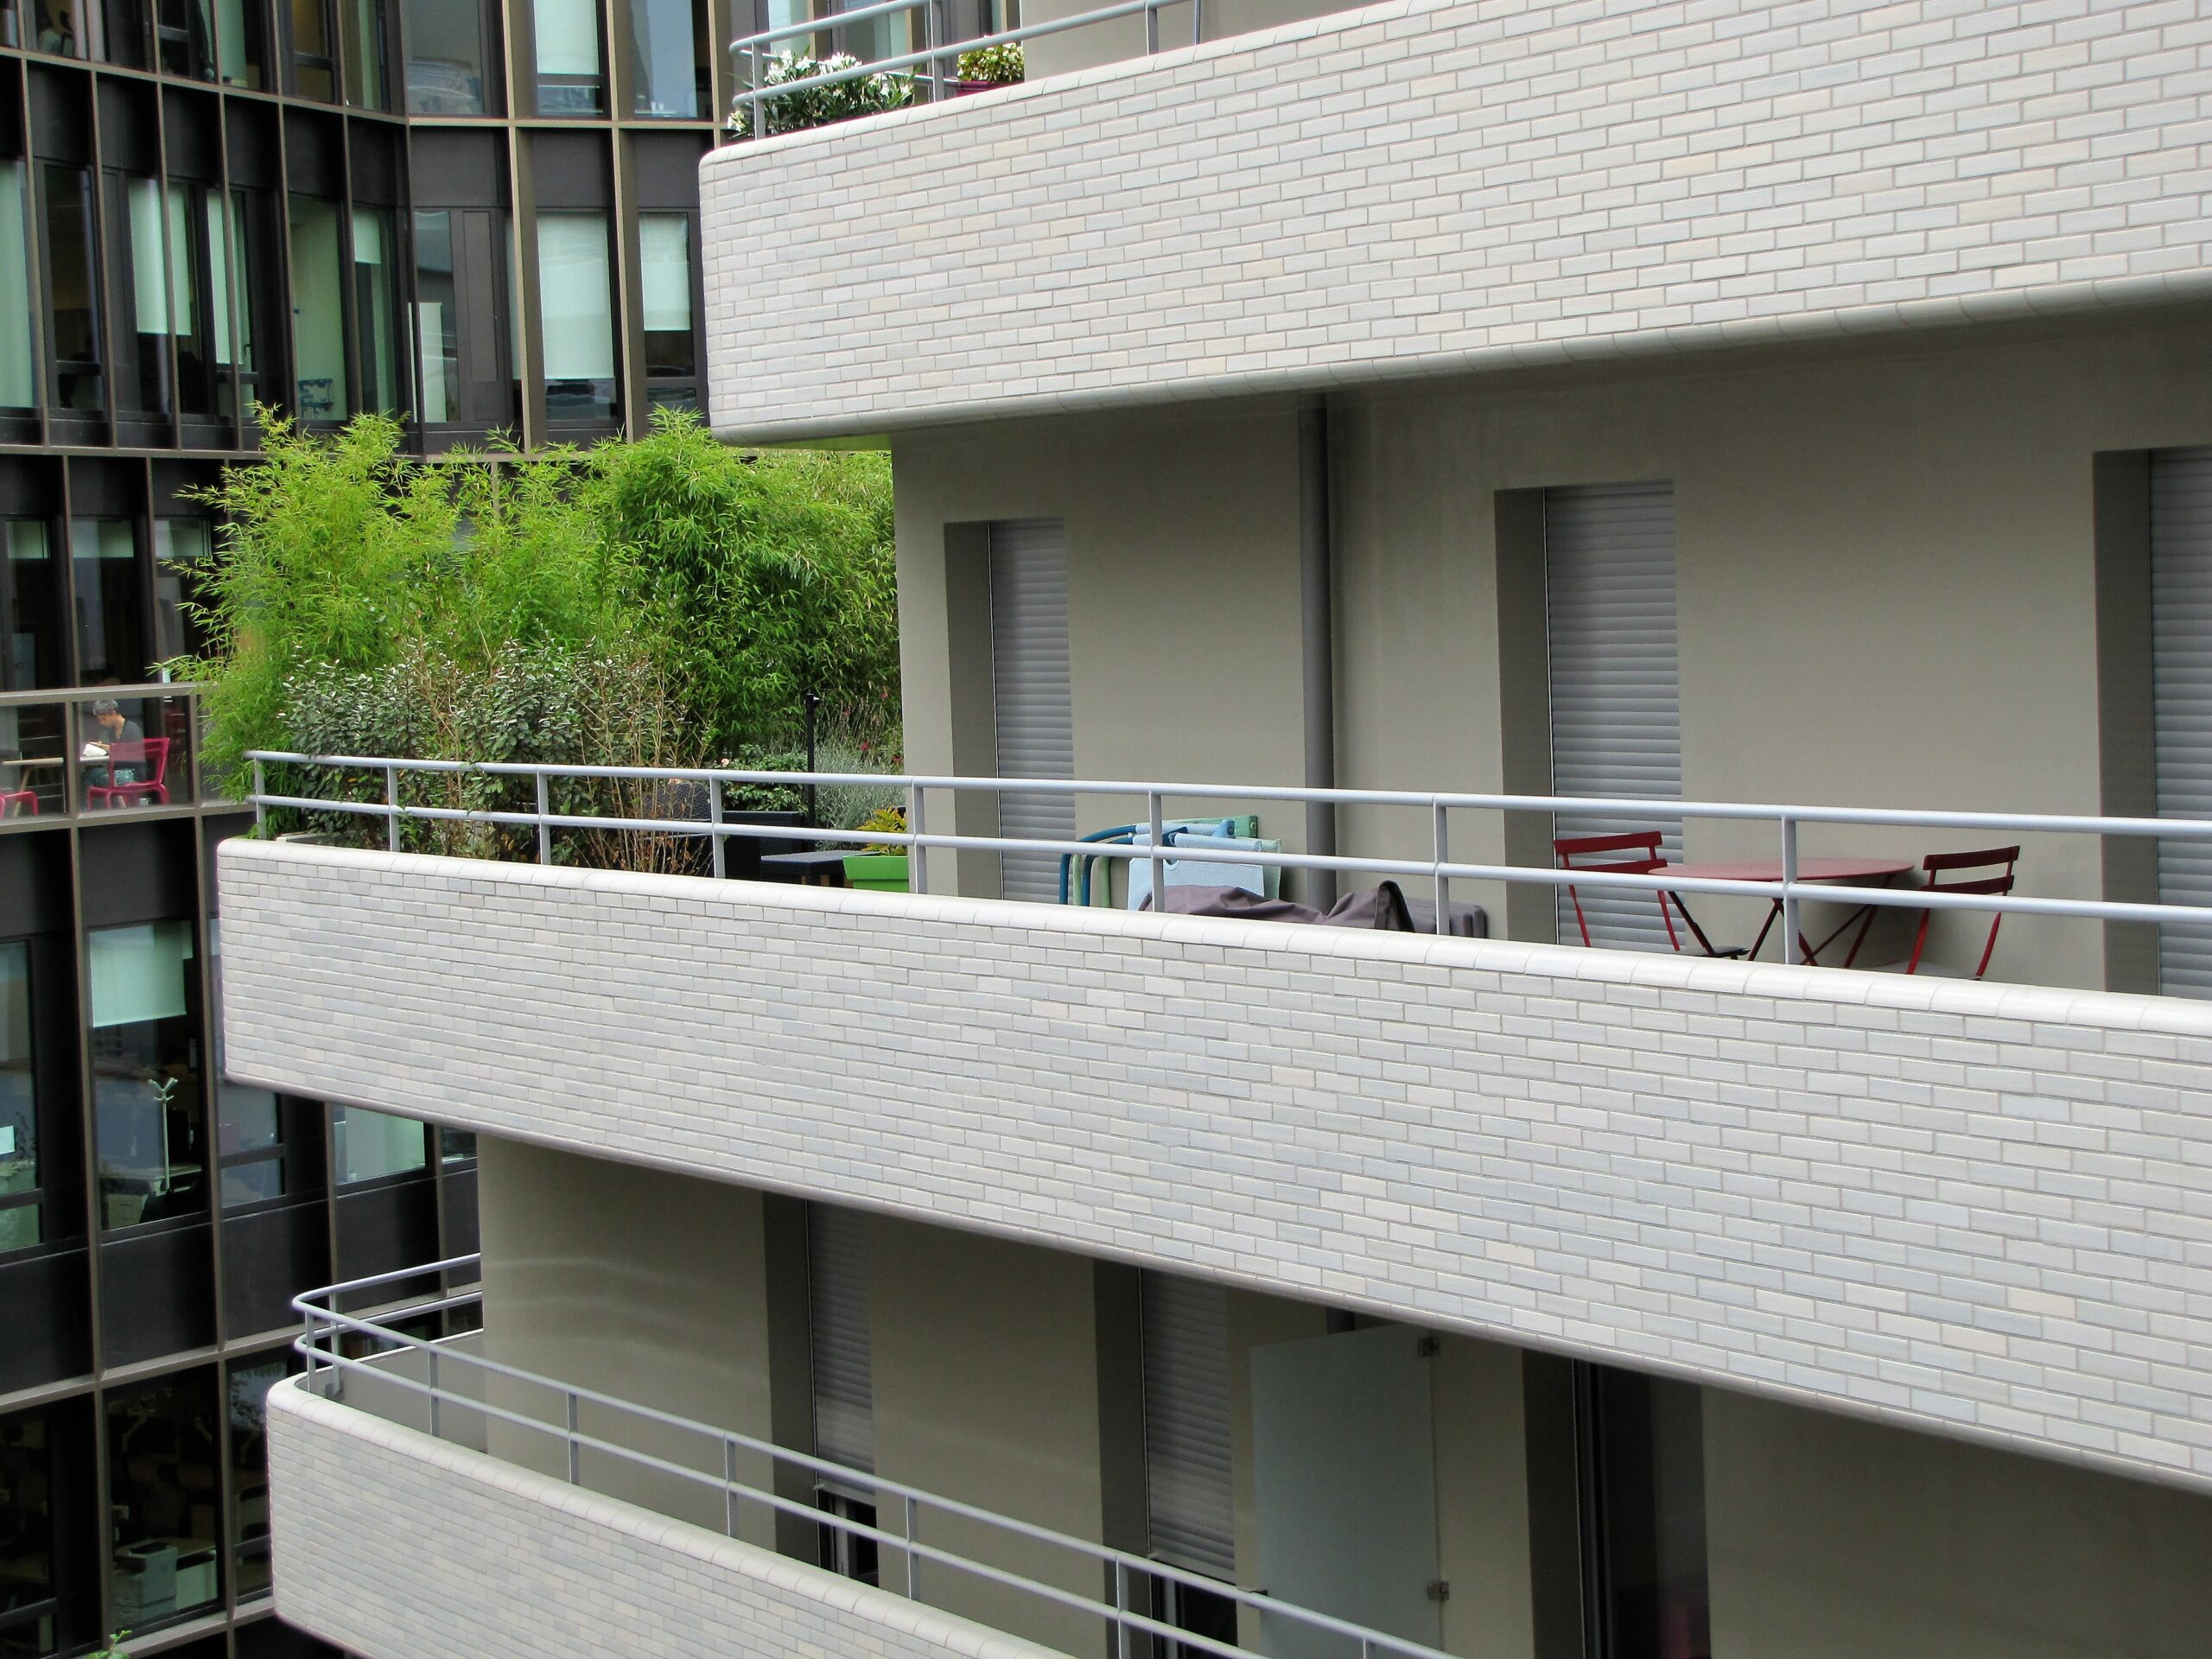 Immeuble de logements à Boulogne-Billancourt (Hauts-de-Seine) Architectes : AZC – Grégoire Zündel et Irina Cristea © Sergio Grazia